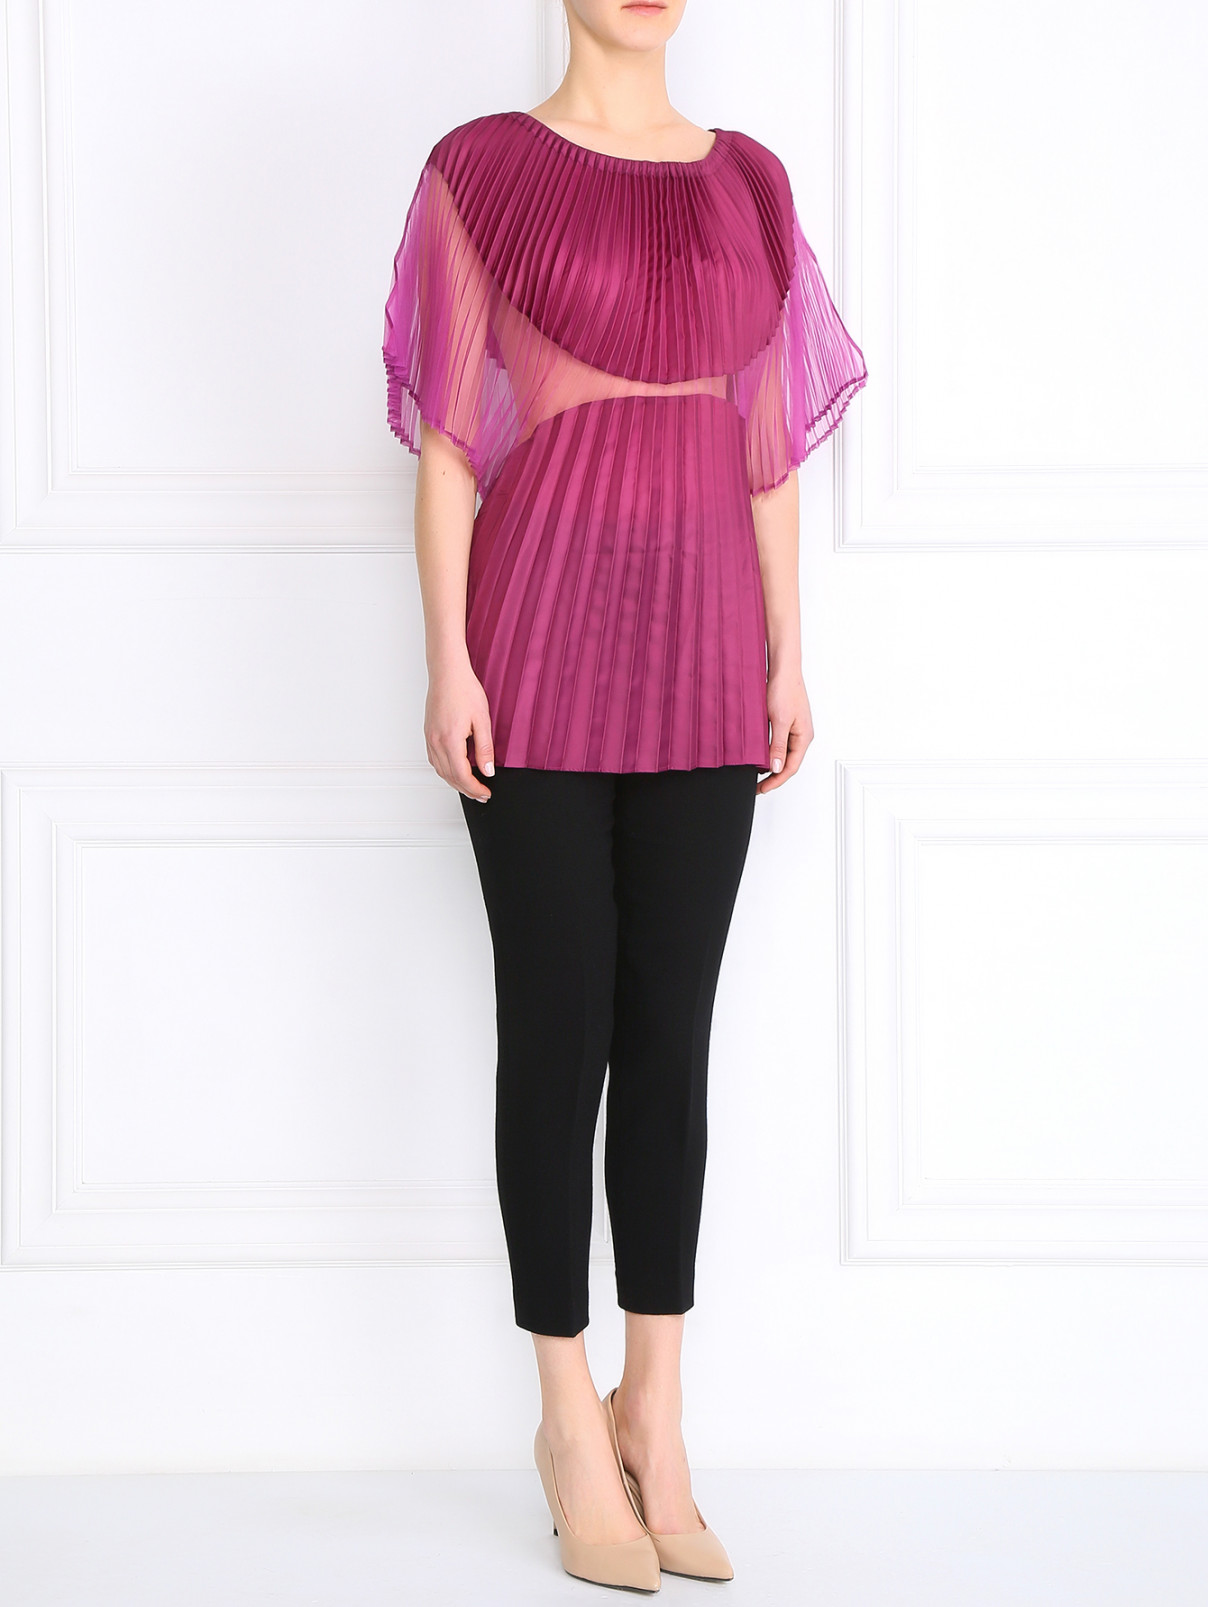 Блуза-плиссе Jean Paul Gaultier  –  Модель Общий вид  – Цвет:  Фиолетовый